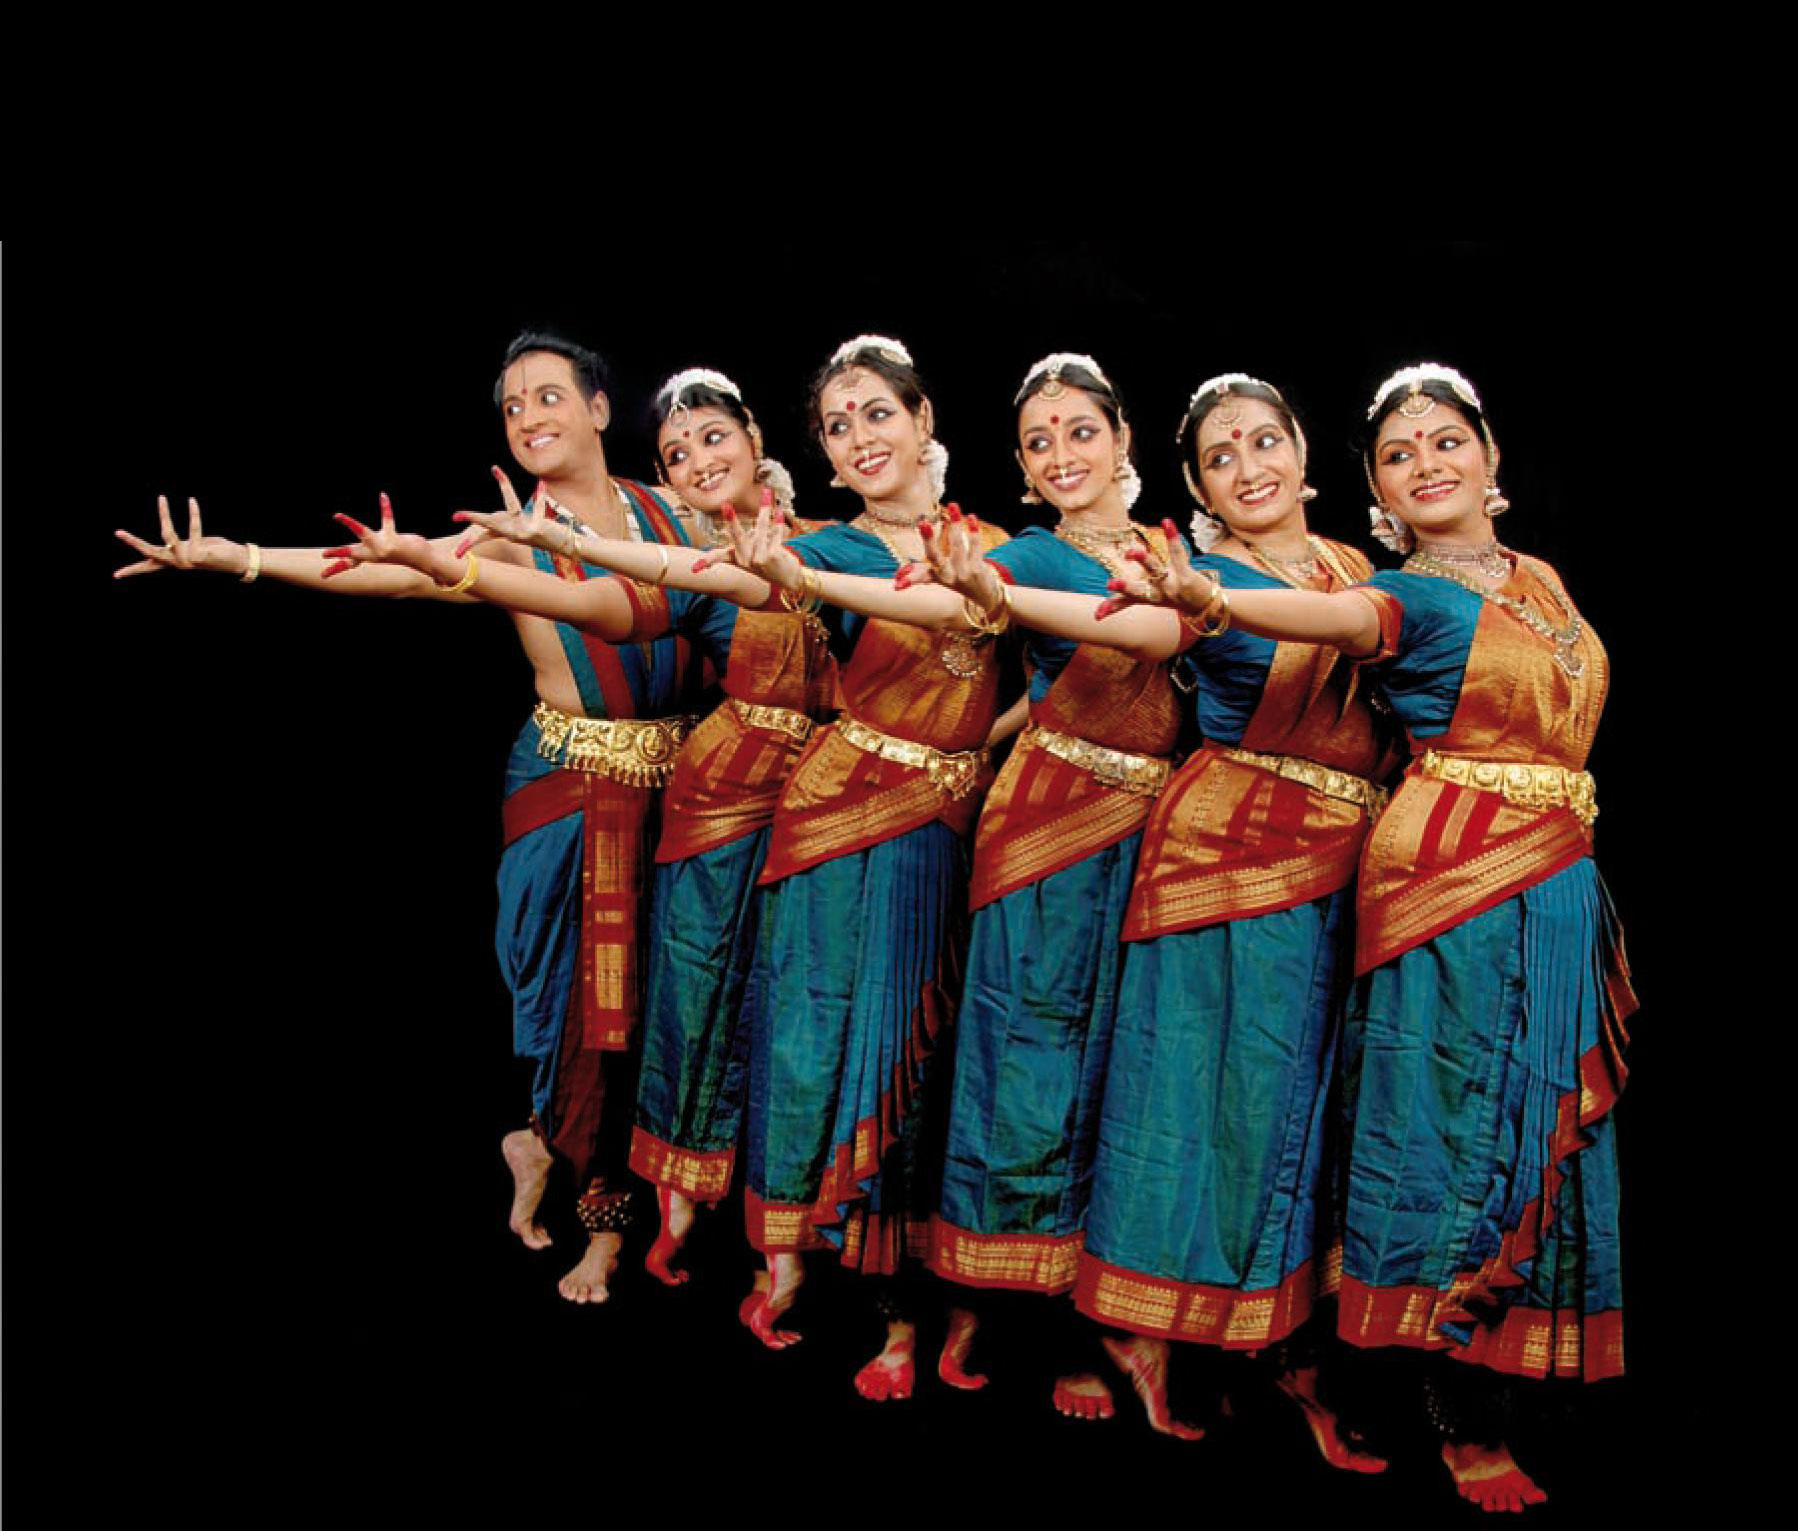 Le Théâtre Benoît XII accueille le spectacle « Bharathanatyam Danse de l’Inde » du Centre Atma, vendredi 7 juin